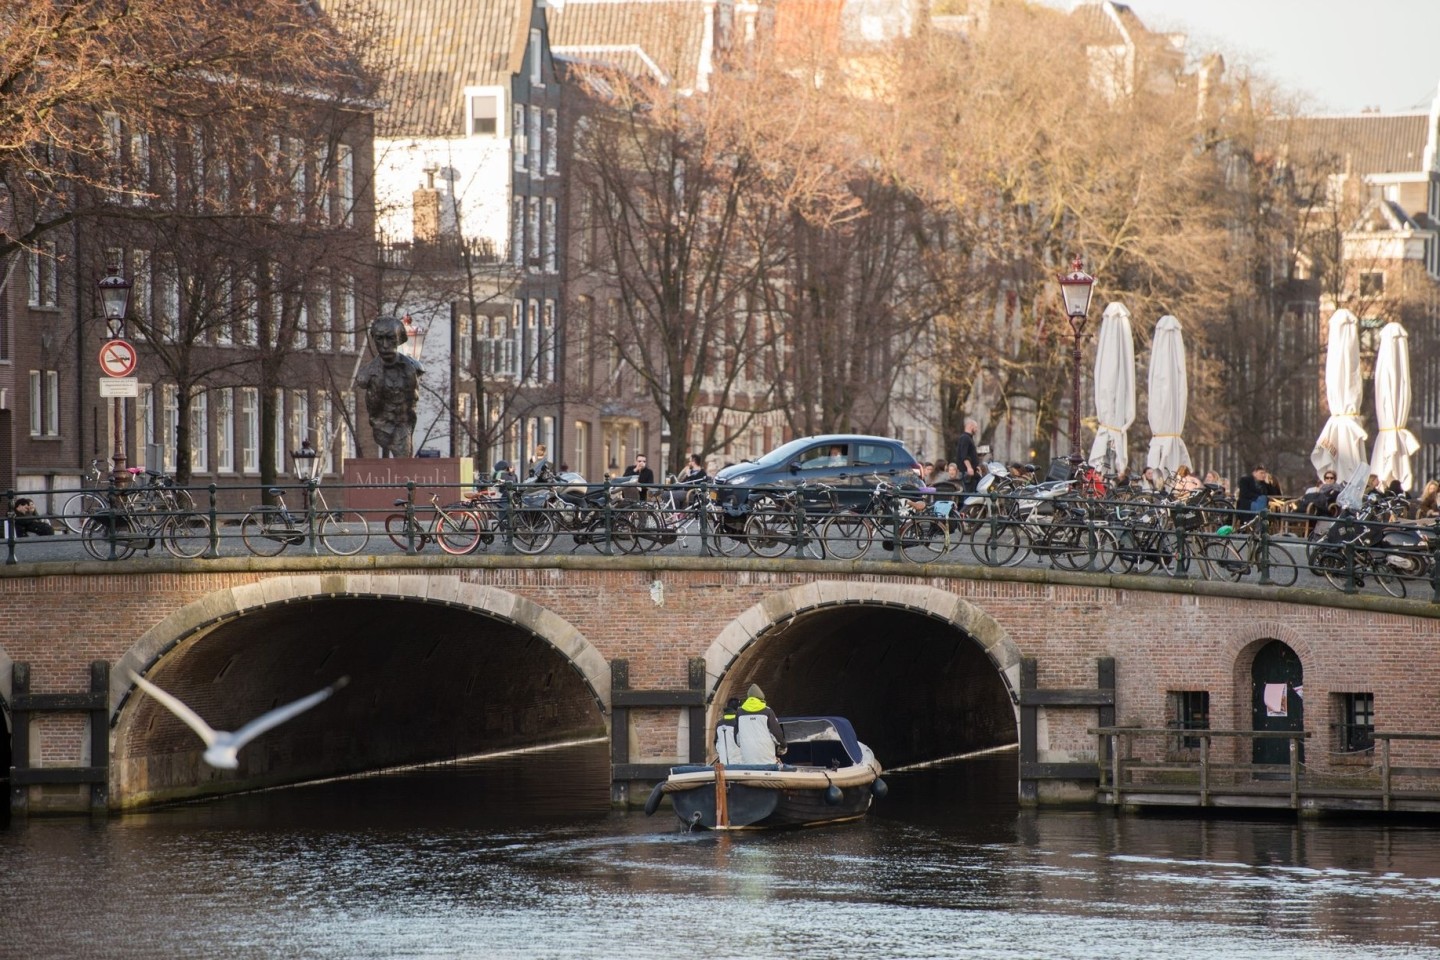 Pro Tag fahren in Amsterdam bis zu 450 Touristenbusse in die Innenstadt. Viel zu viel, sagt die Stadtverwaltung - und verhängt einen Stop.